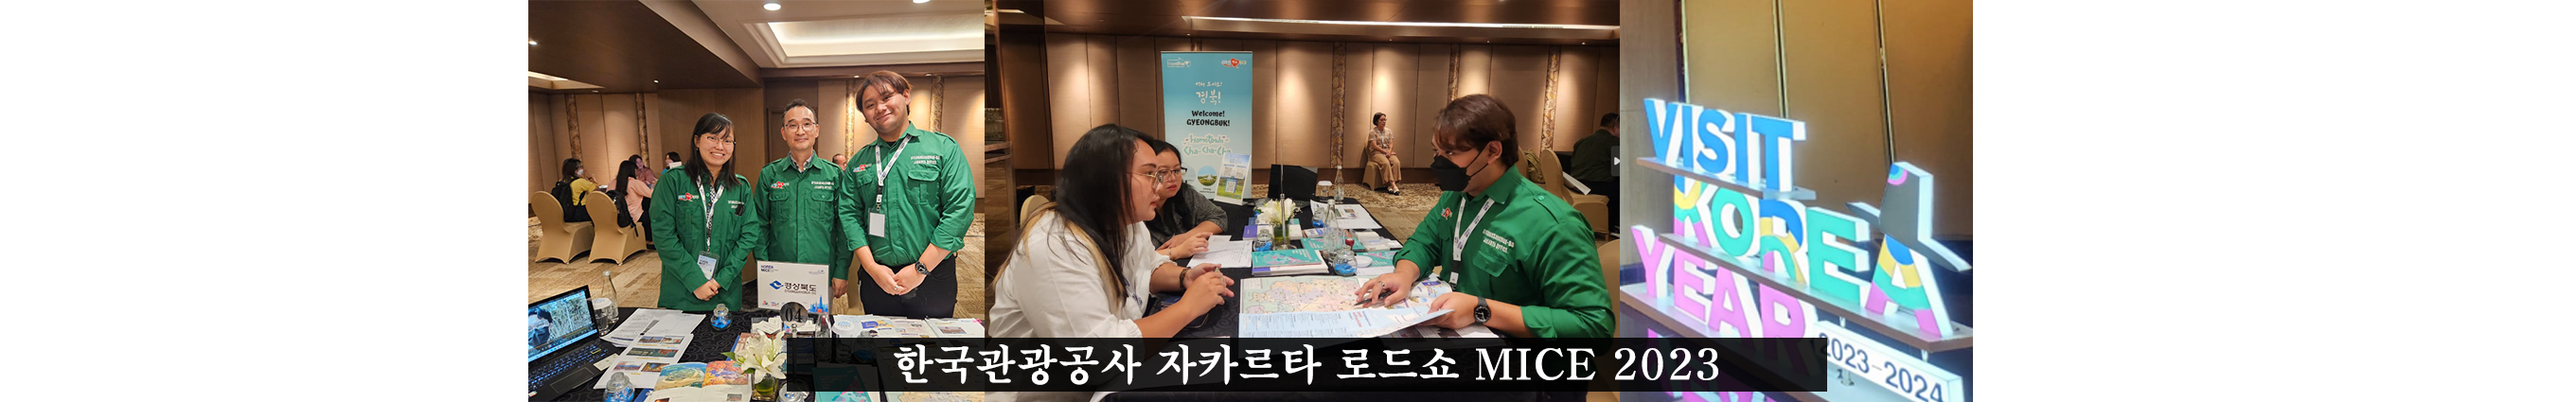 한국관광공사 자카르타 로드쇼 MICE 2023